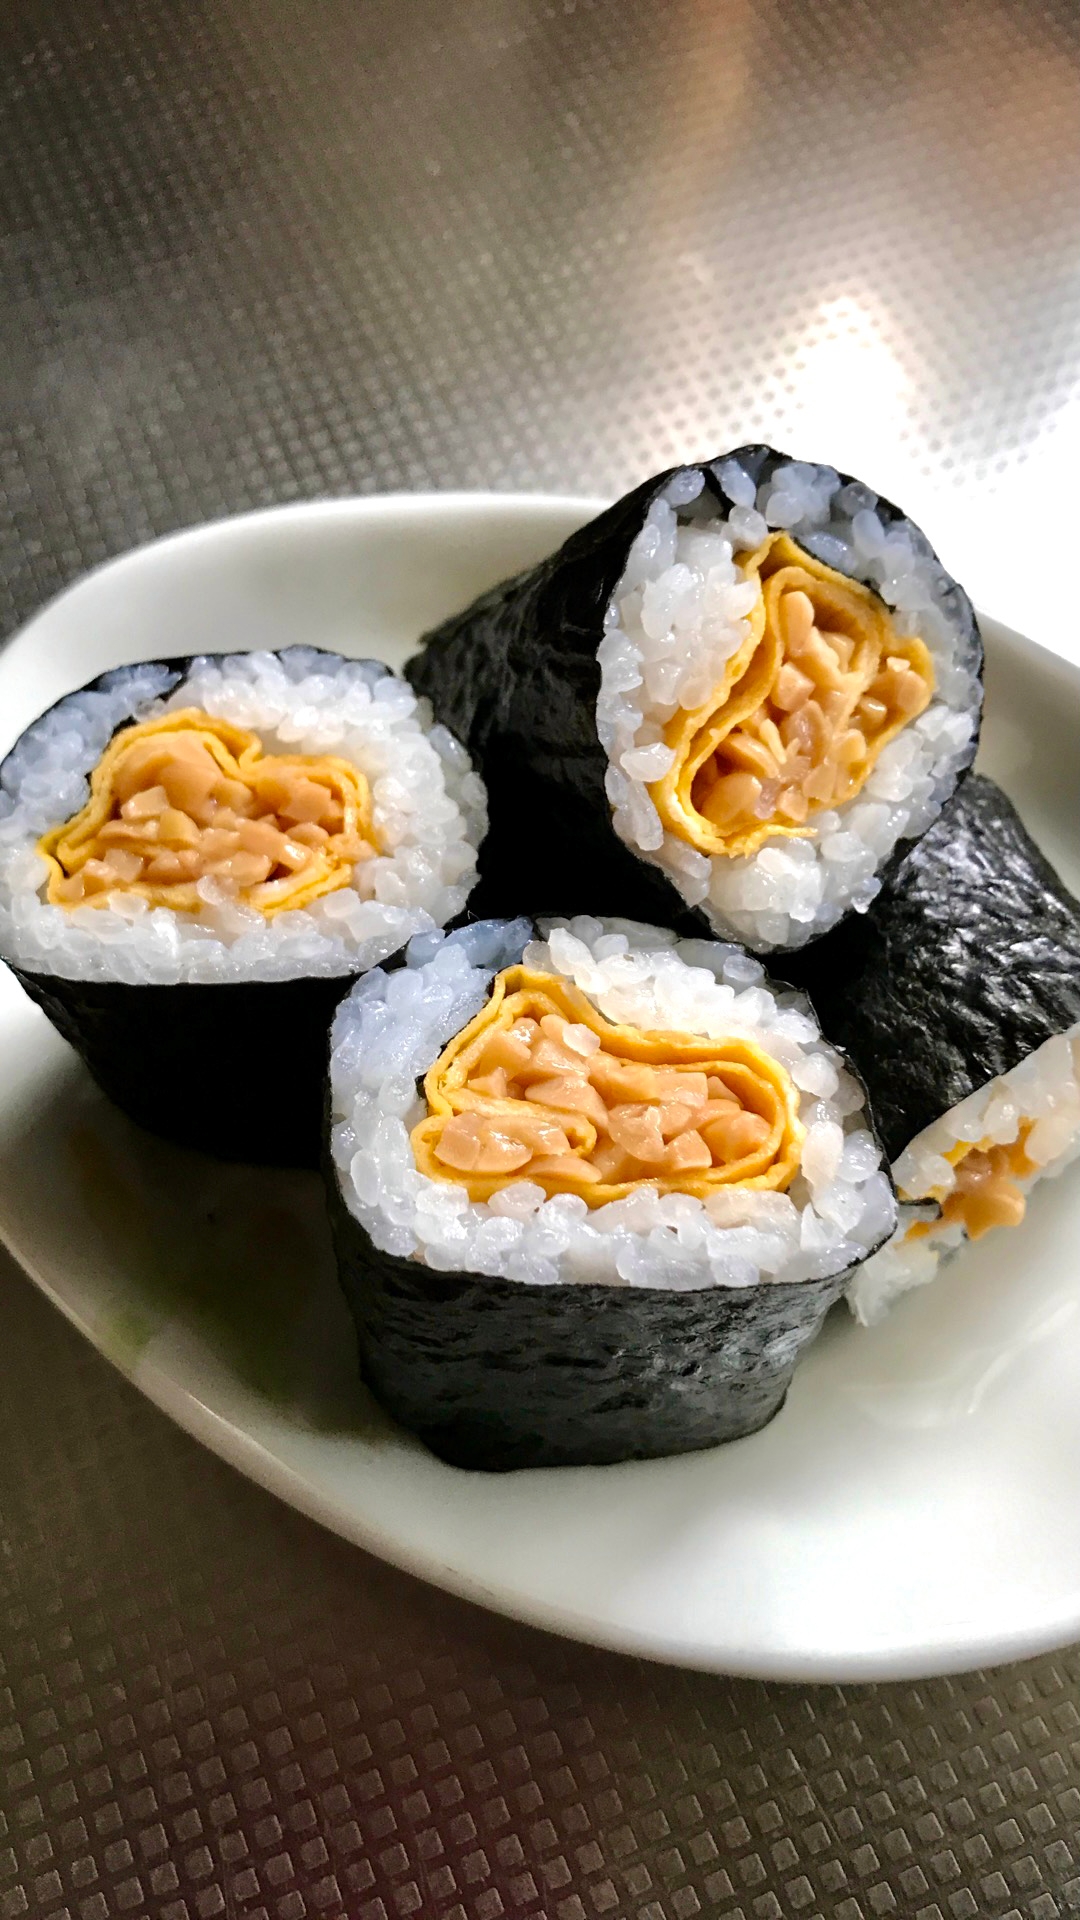 卵巻き納豆の海苔巻き寿司